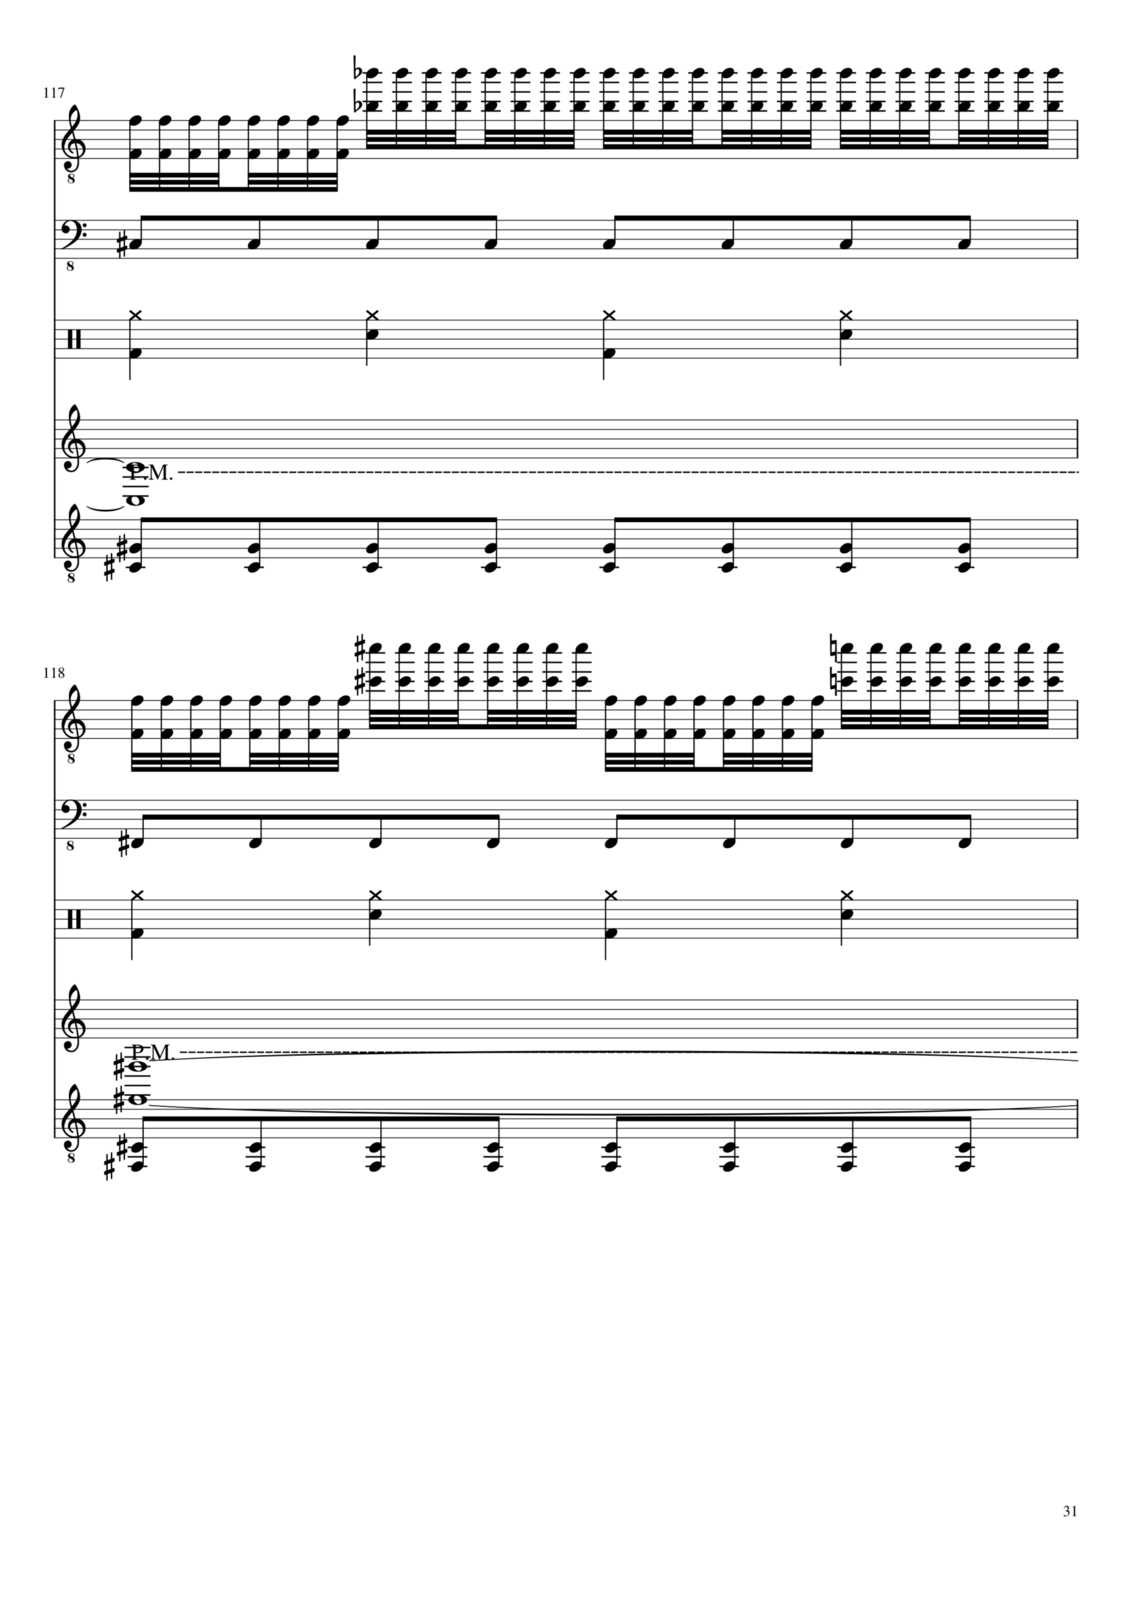 Vechnaya prizrachnaya vstrechnaya slide, Image 31